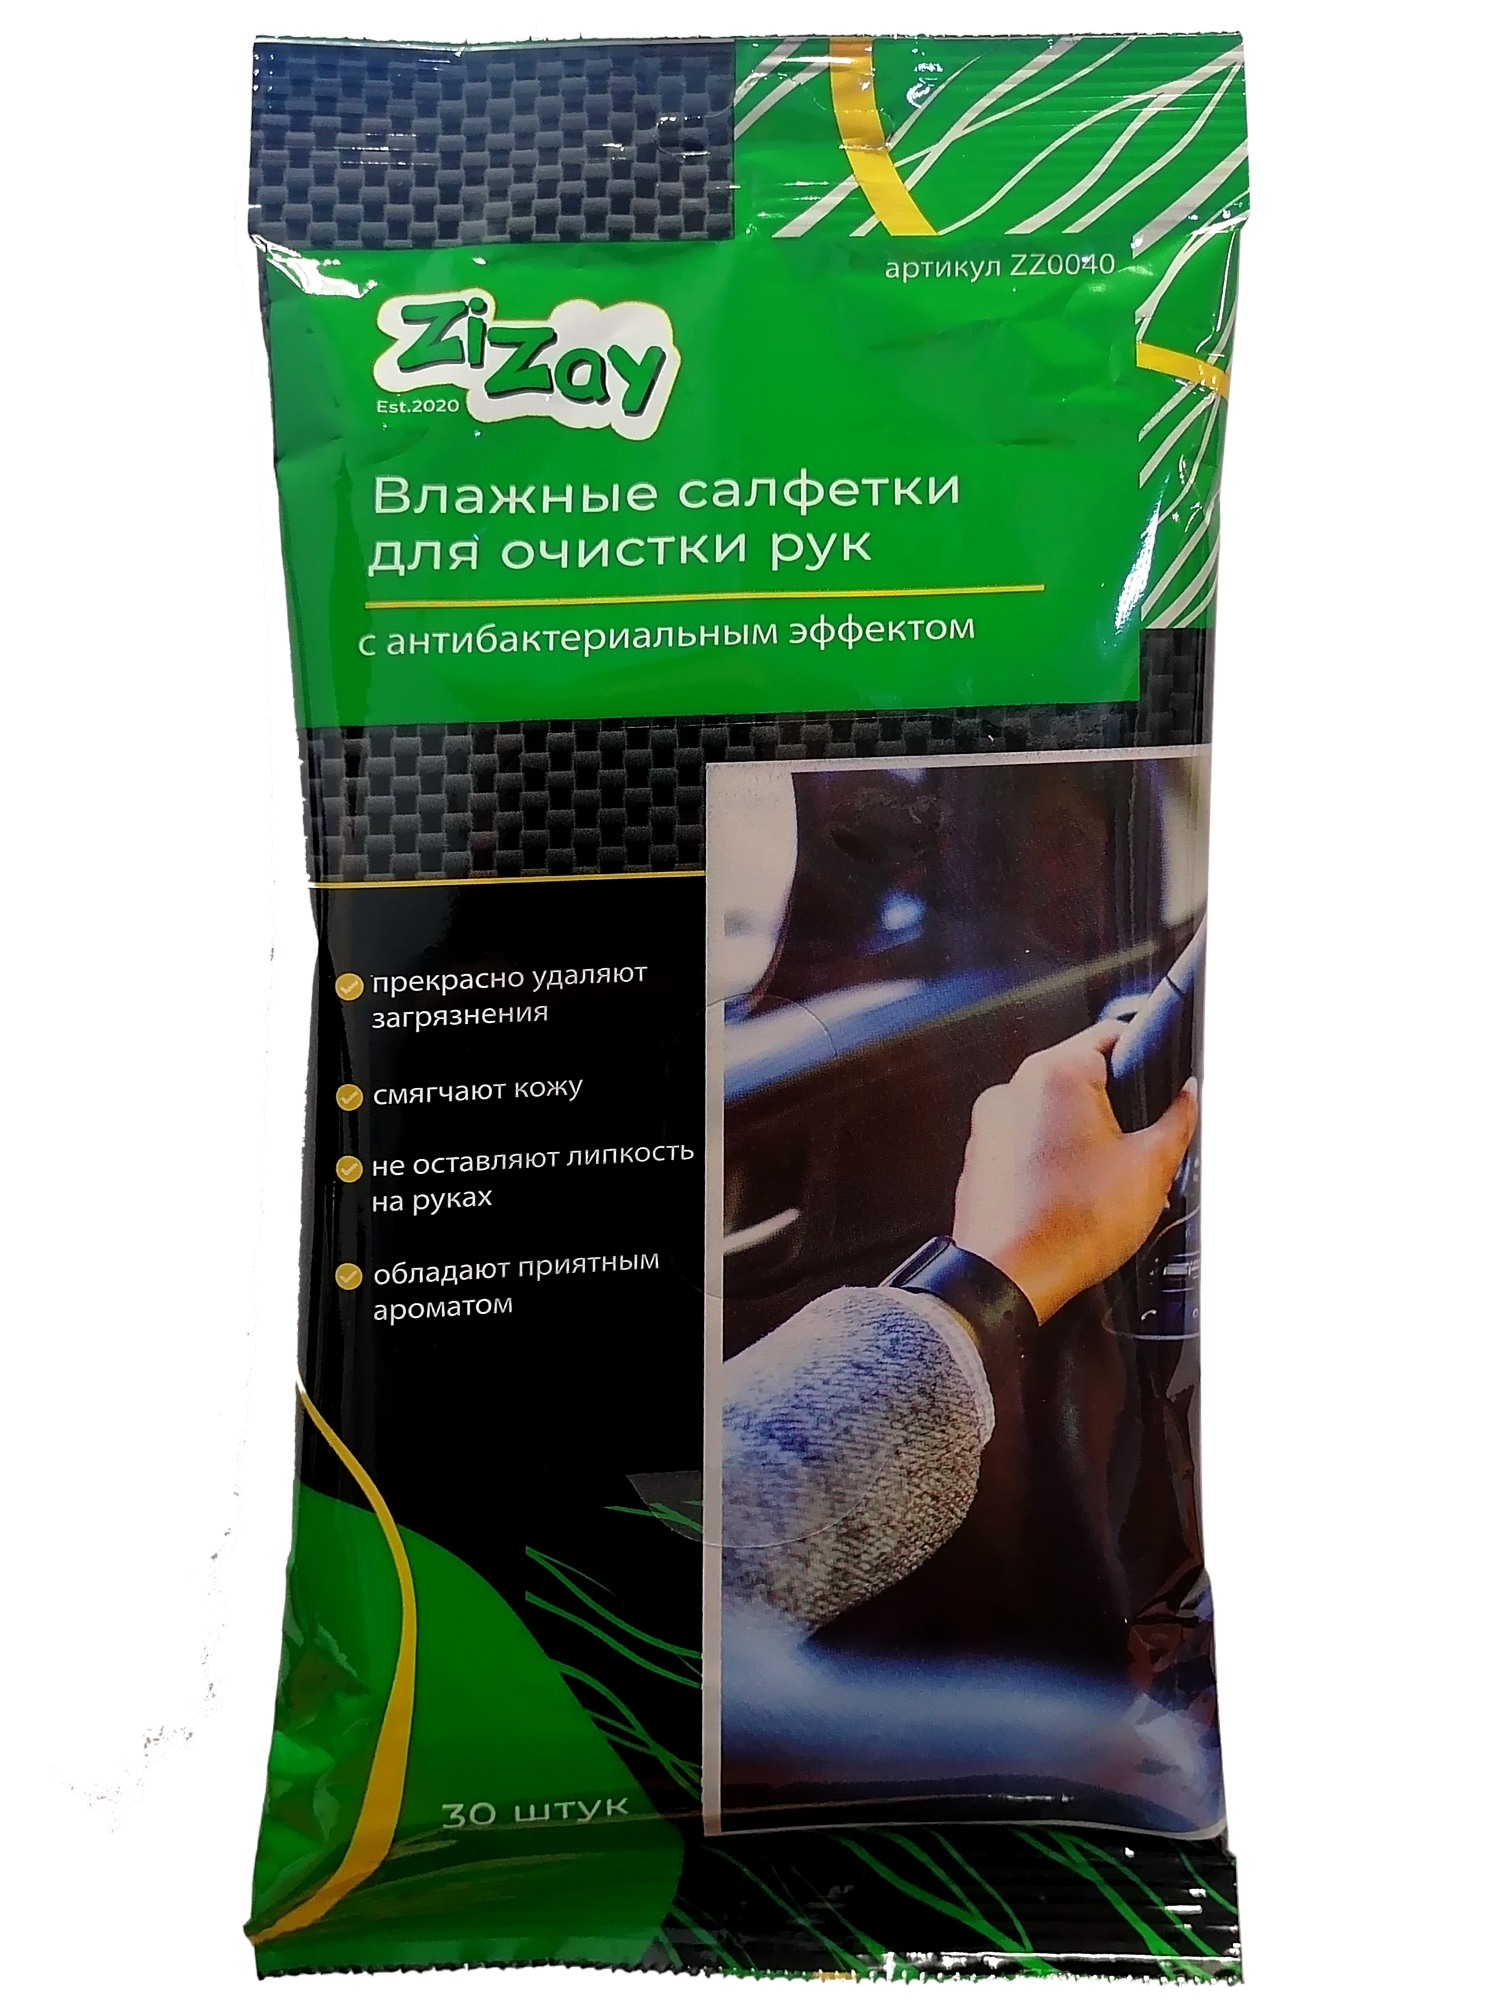 Салфетки влажные ZiZay, для очистки рук, с антибактериальным эффектом, 20х15 см, 30 шт.